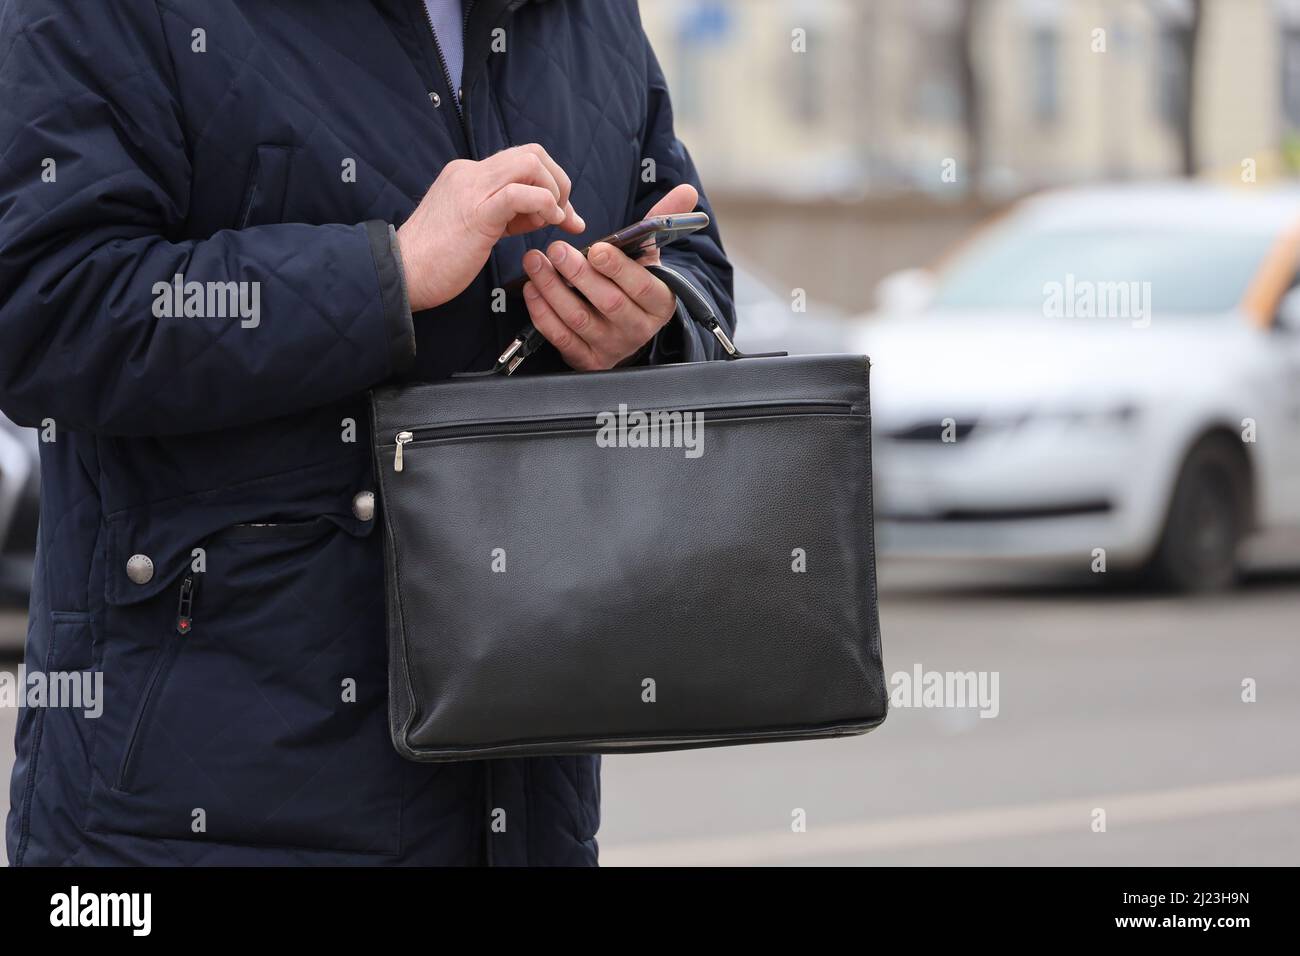 Mann im Mantel, der mit einer Ledertasche und einem Smartphone in der Hand auf einer Stadtstraße steht. Konzept von Geschäftsleuten, Beamten, Regierungsangestellte Stockfoto